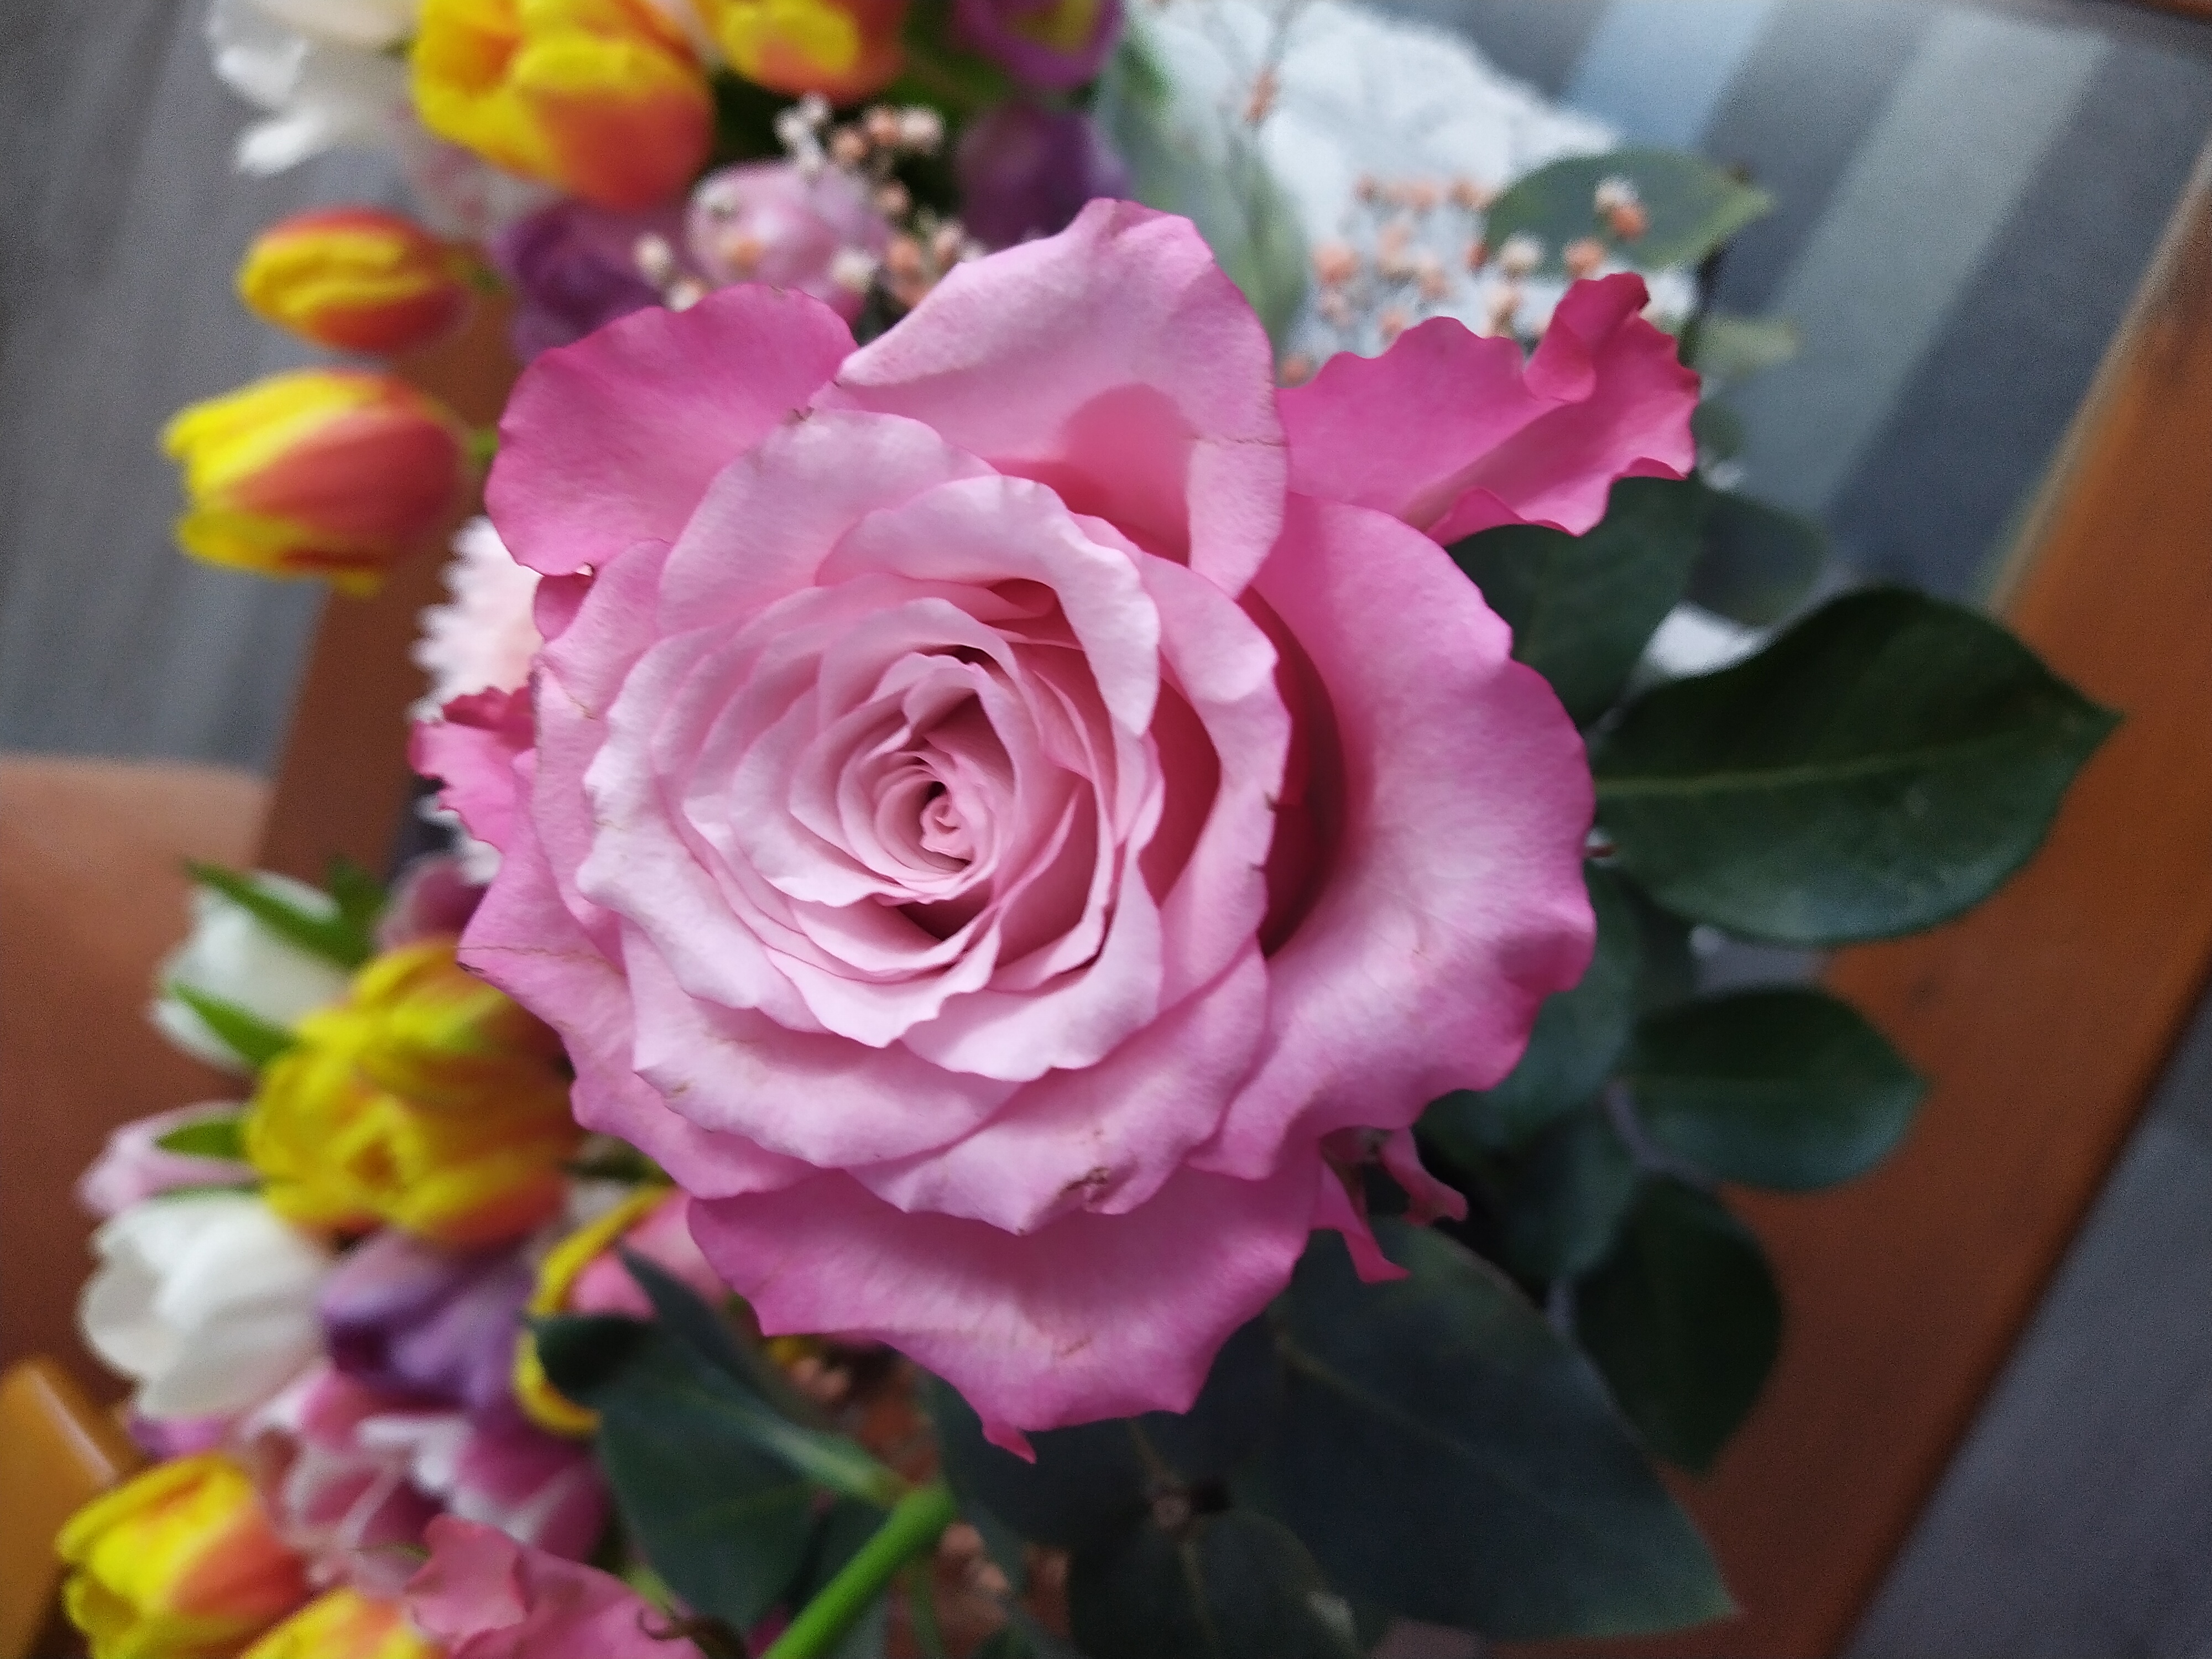 kukkia maljakossa, päänä esillä vaaleanpunainen iso ruusu.